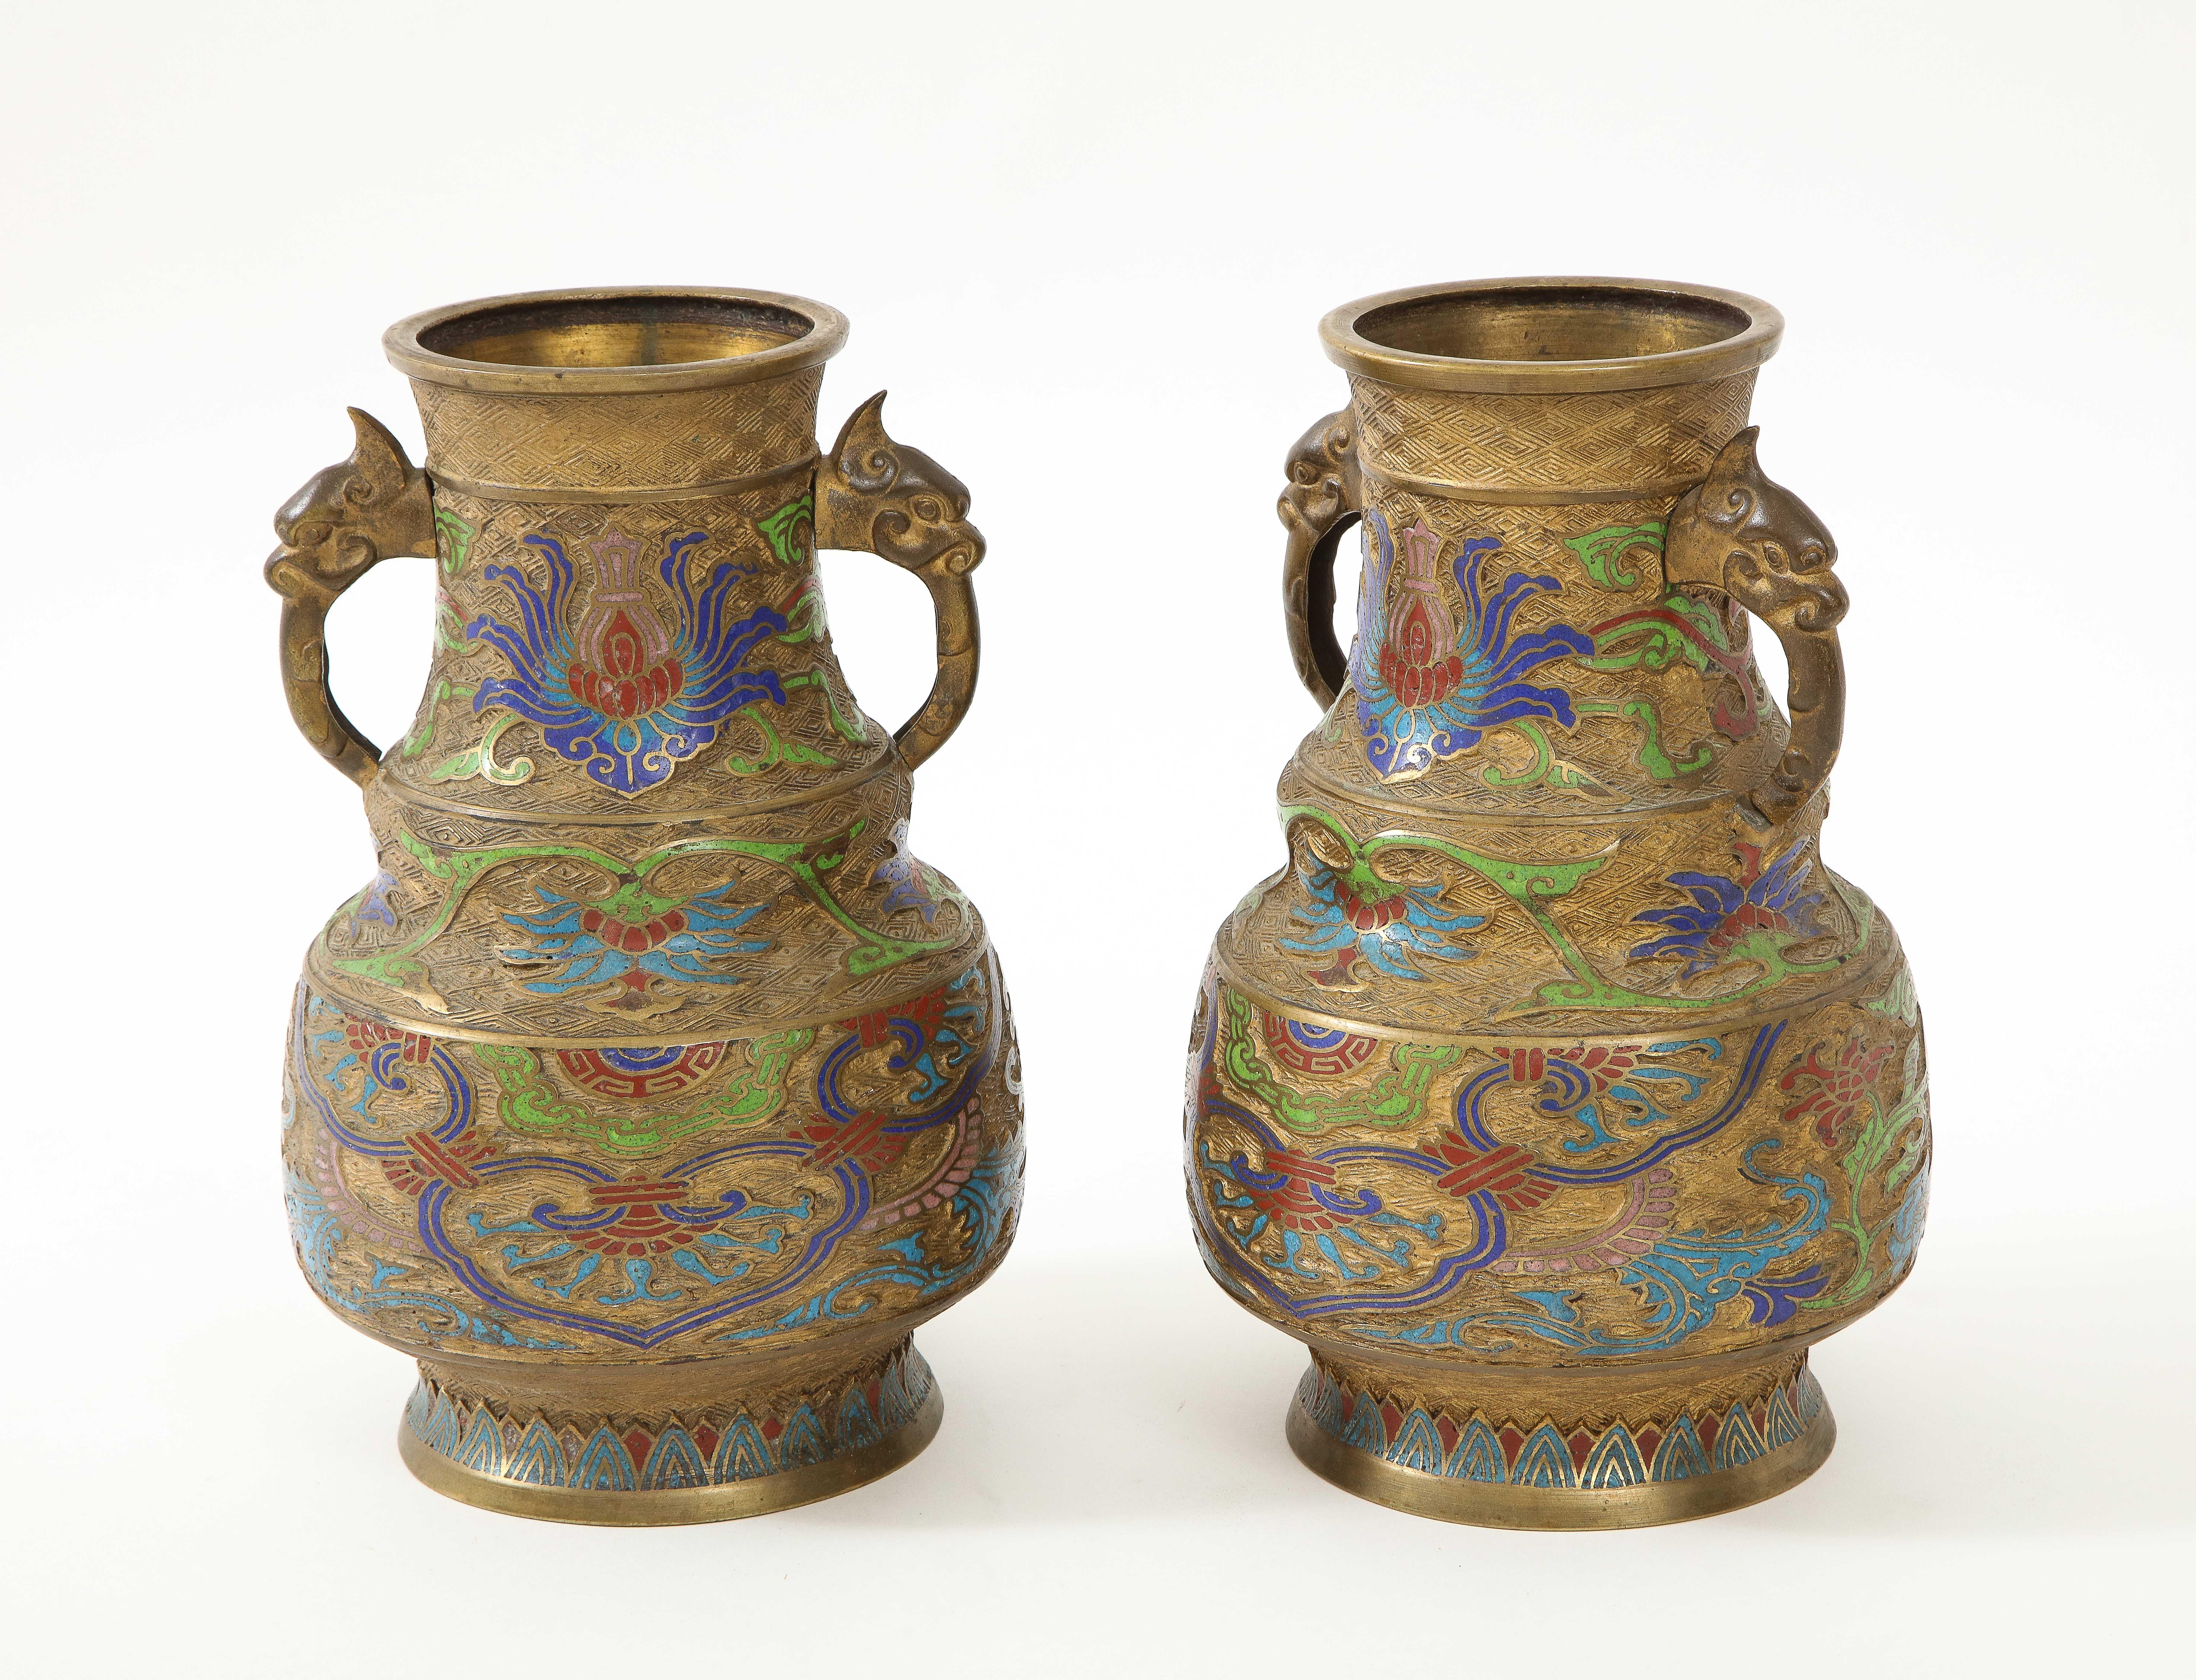 Paar chinesische Export-Cloisonne-Gefäße aus dem späten 19. Die Gefäße sind mit stilisierten Blumenmustern aus ziseliertem Glas in den Farben der viktorianischen Ära (rot/maroon, blau und grün) versehen. Drachengriffe vervollständigen den exotischen